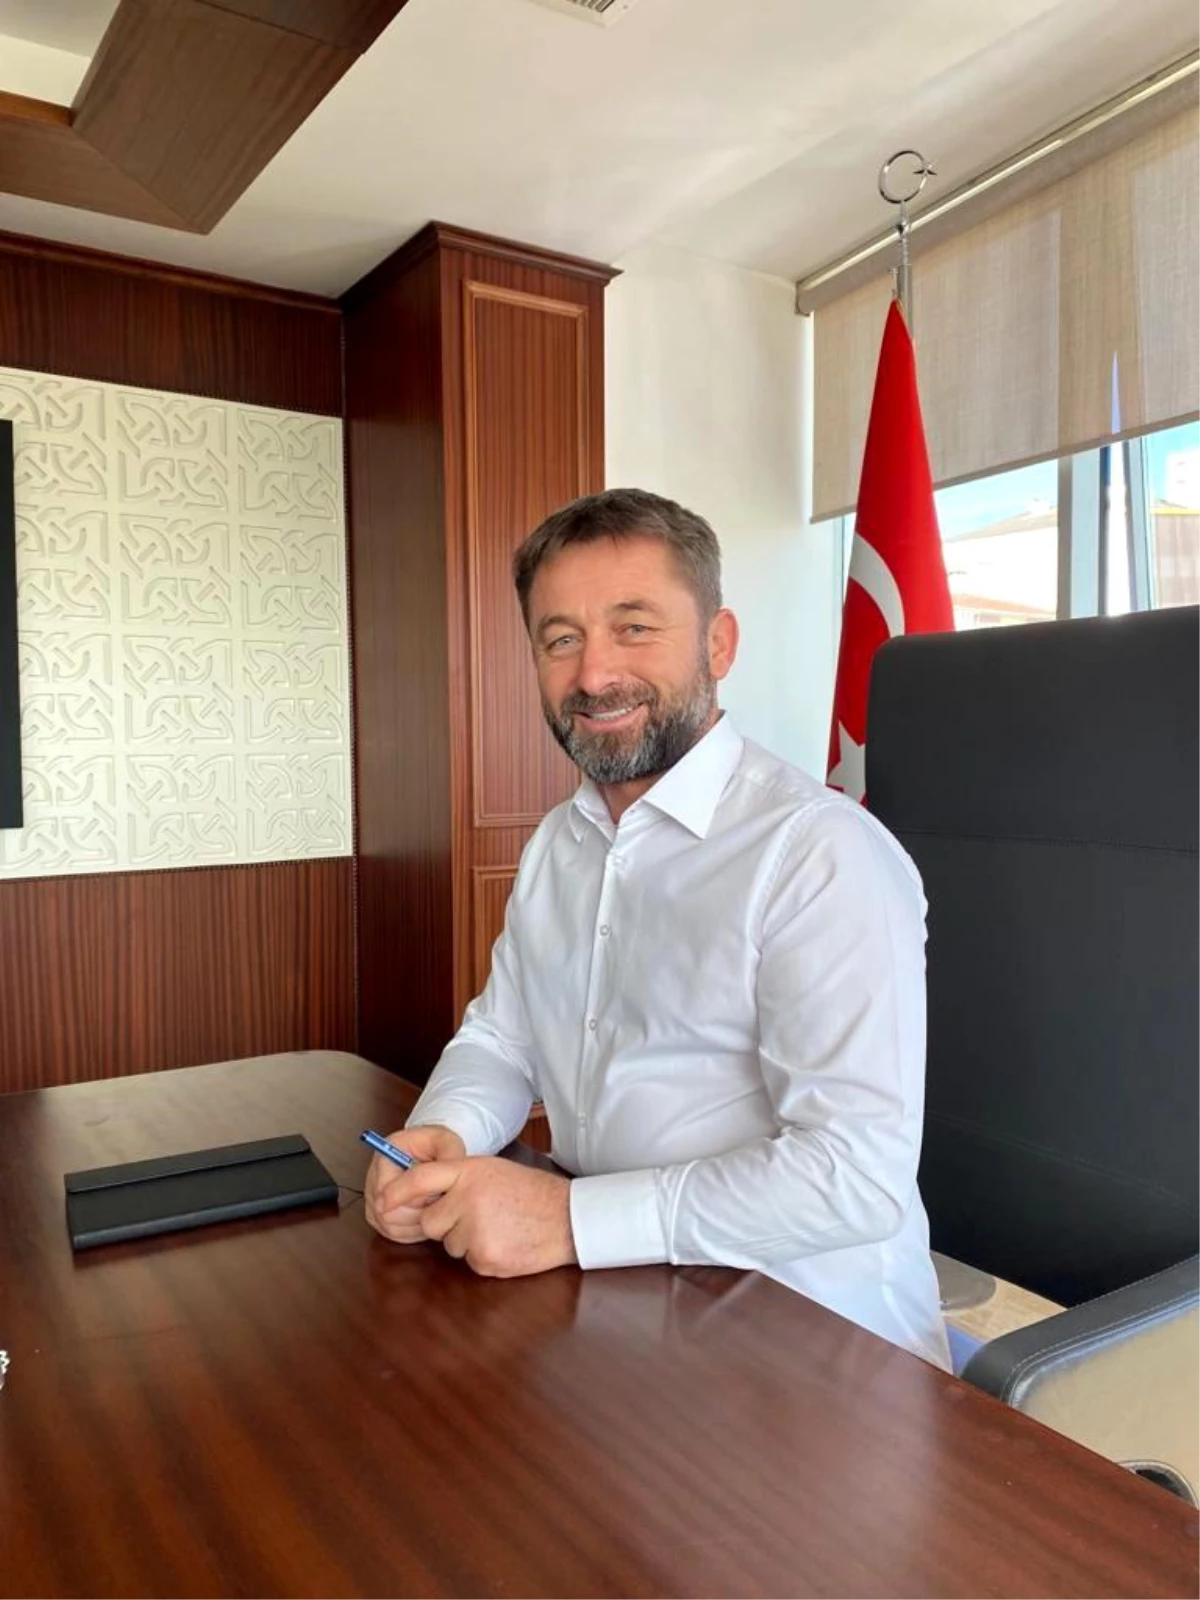 Çerkezköy Ticaret ve Sanayi Odası Yönetim Kurulu Başkanı Kozuva: "Bölgemiz için çalışıyoruz"